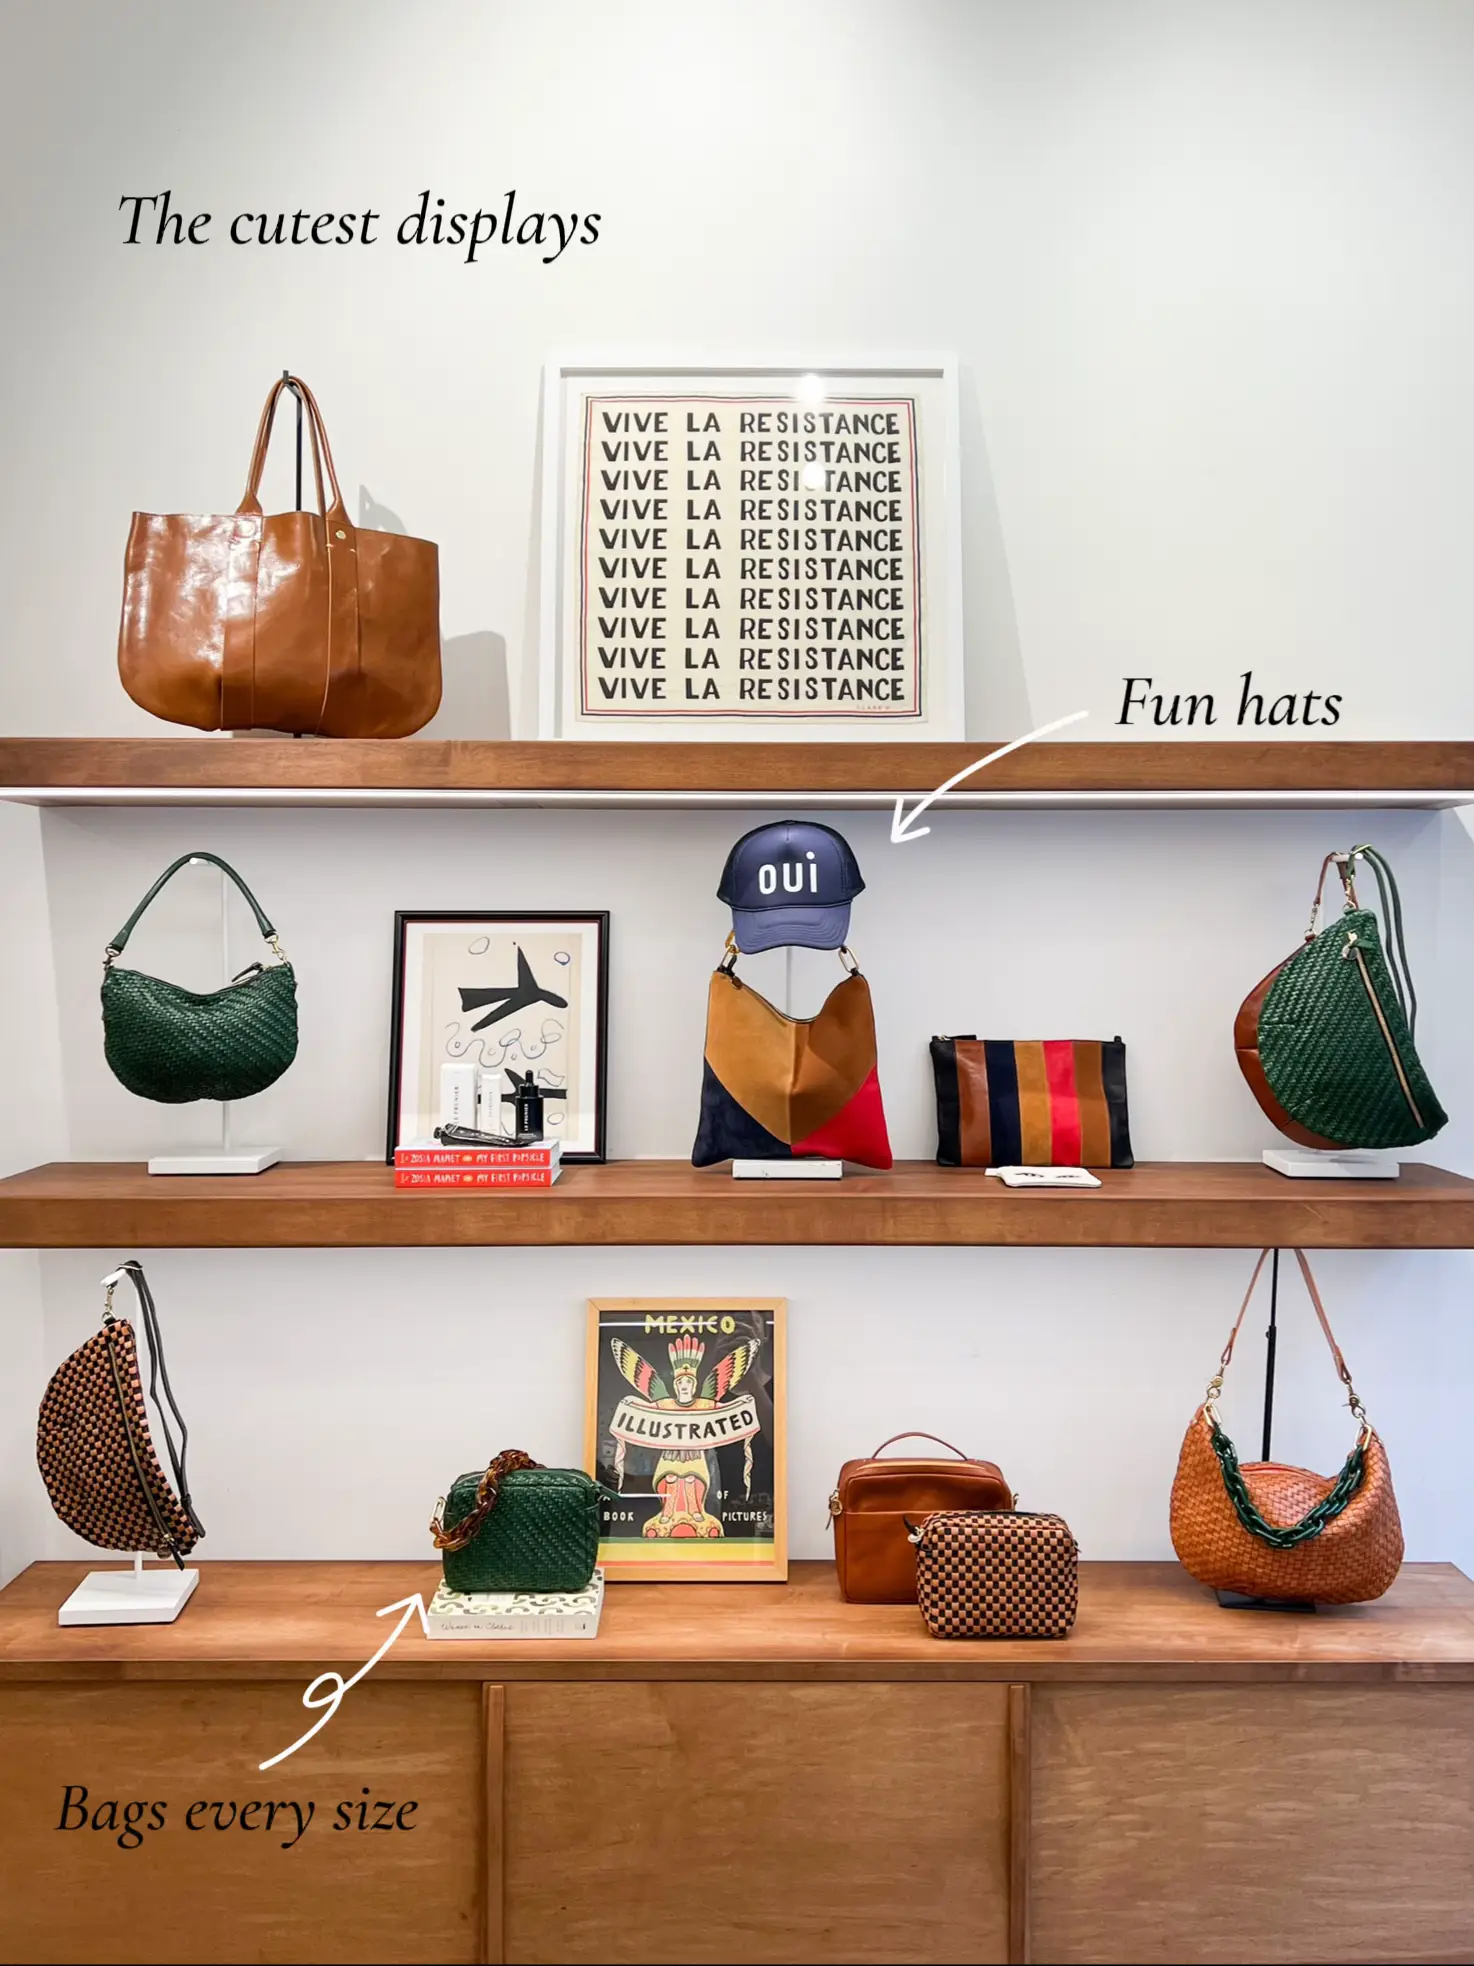 L.A. Handbag Brand Clare V Opens Denver, Chicago Stores – WWD